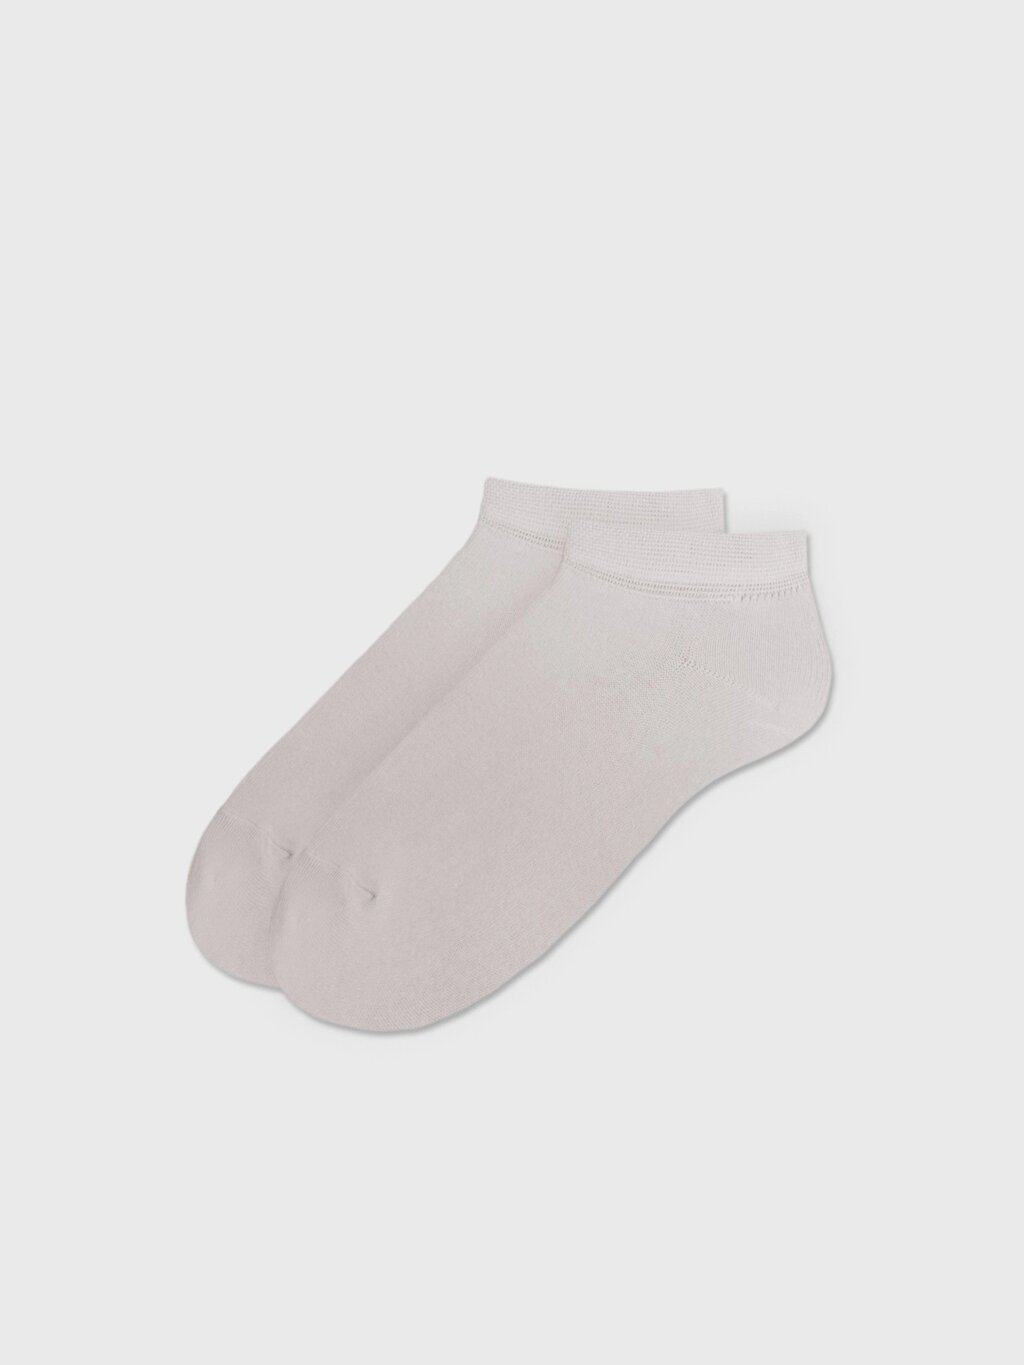 Носки укороченные серые (35-37) от компании Admi - фото 1